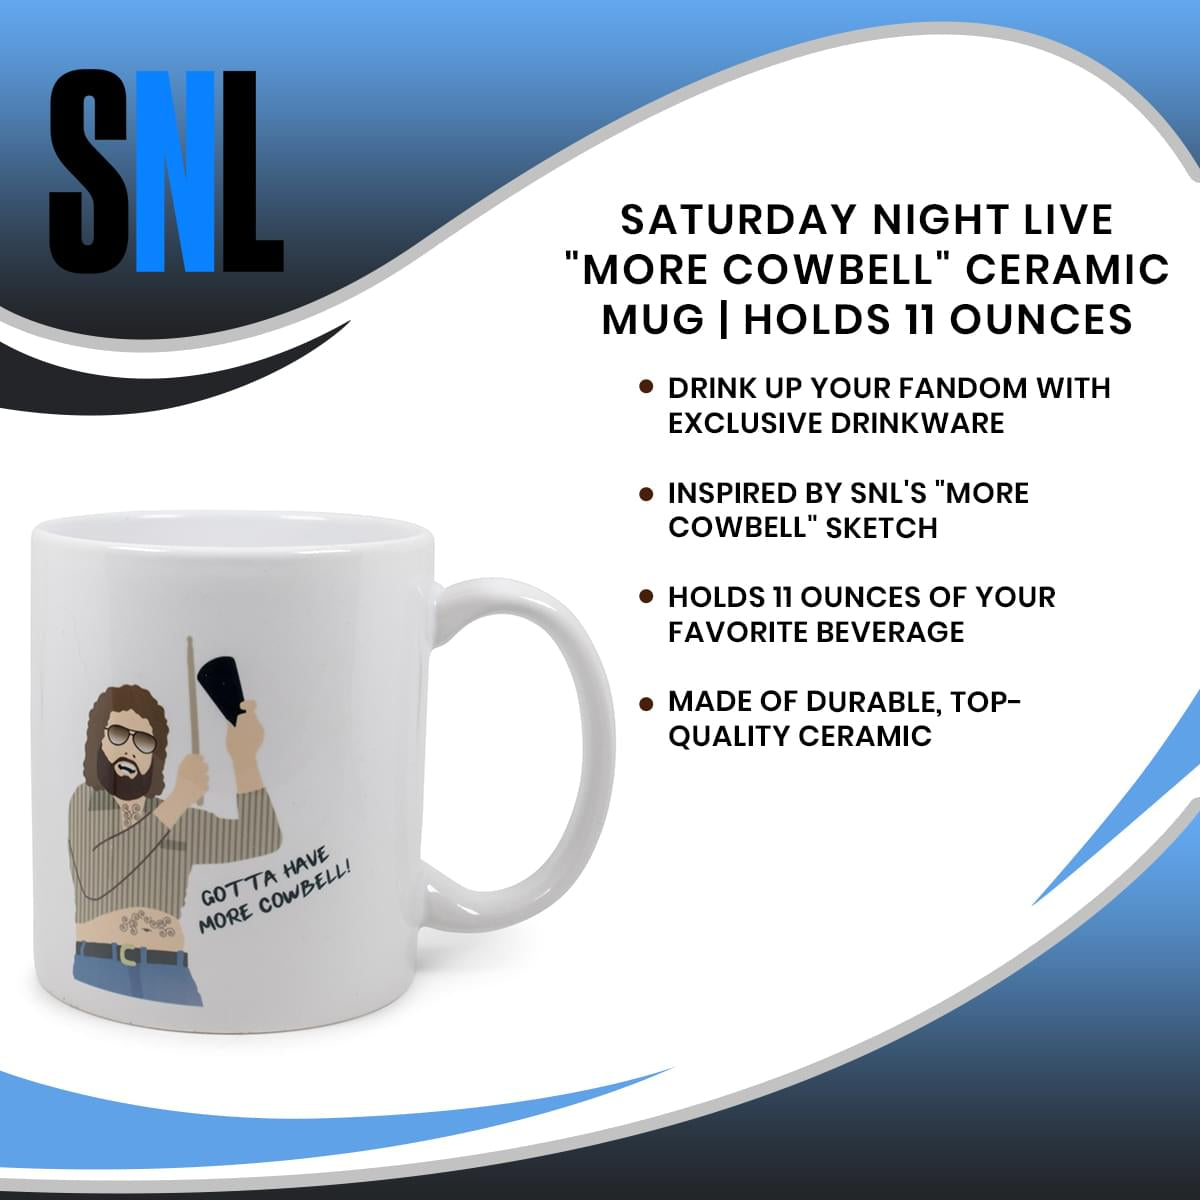 Saturday Night Live "More Cowbell" Ceramic Mug | Holds 11 Ounces